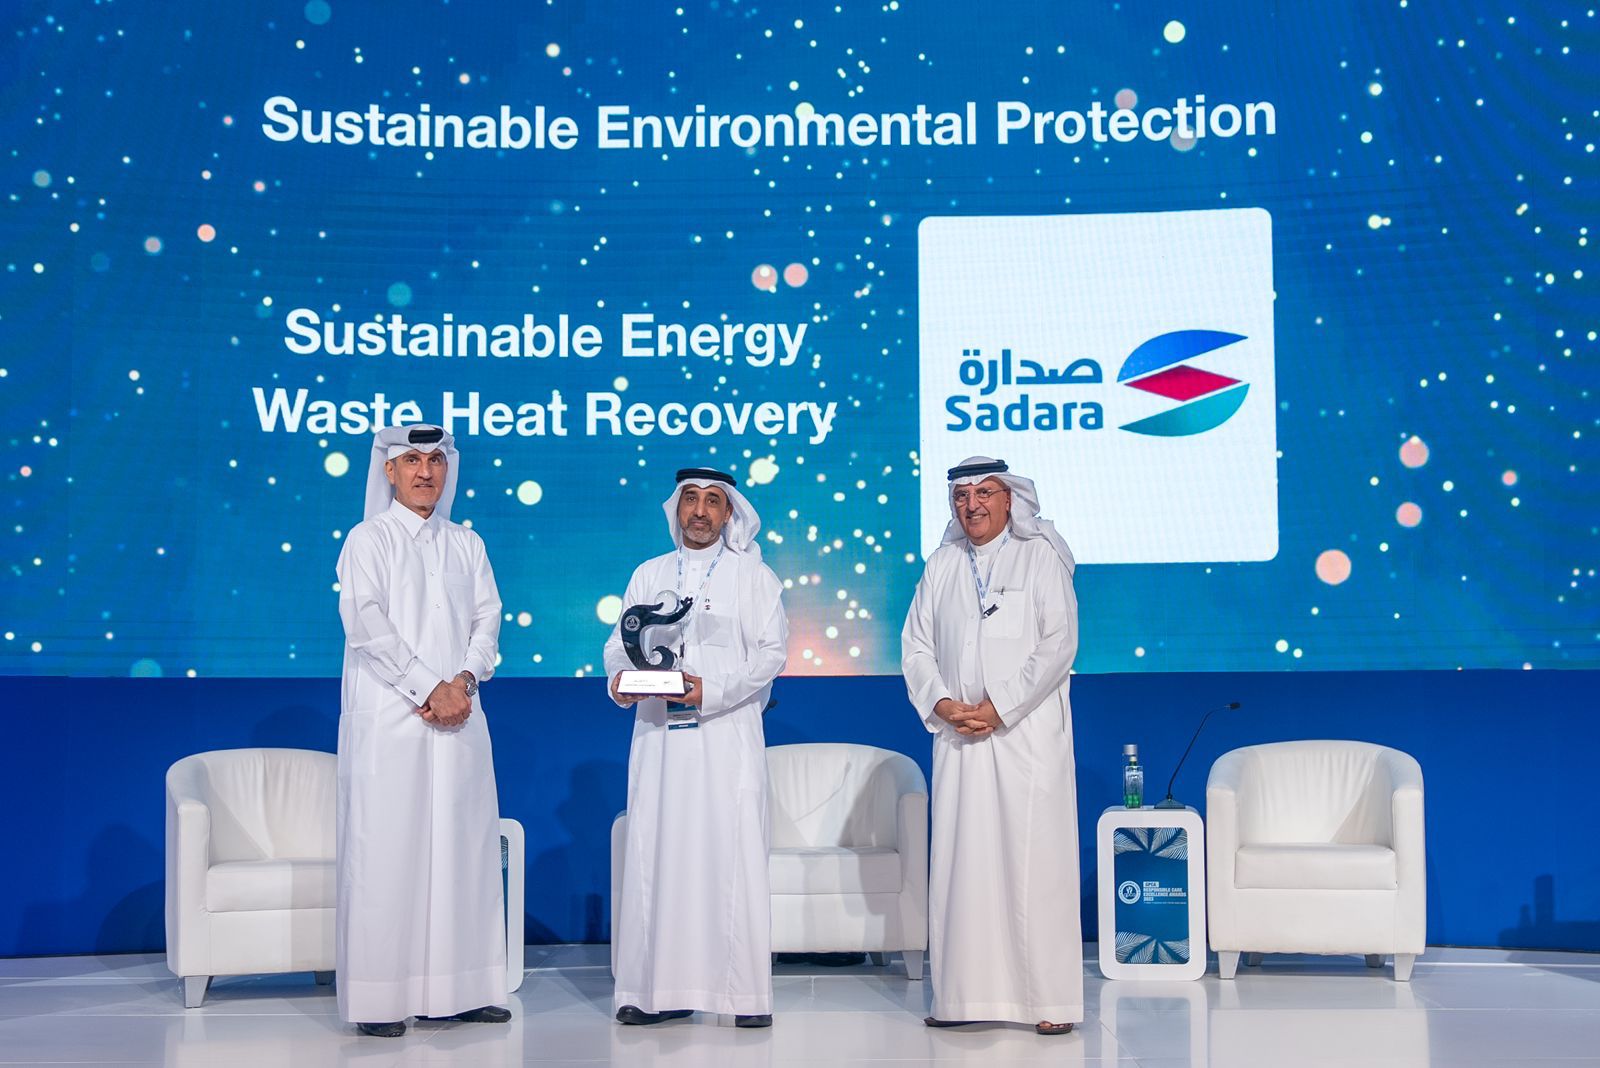 صدارة للكيميائيات تحقق جائزة “جيبكا” في فئة الحماية البيئية المستدامة